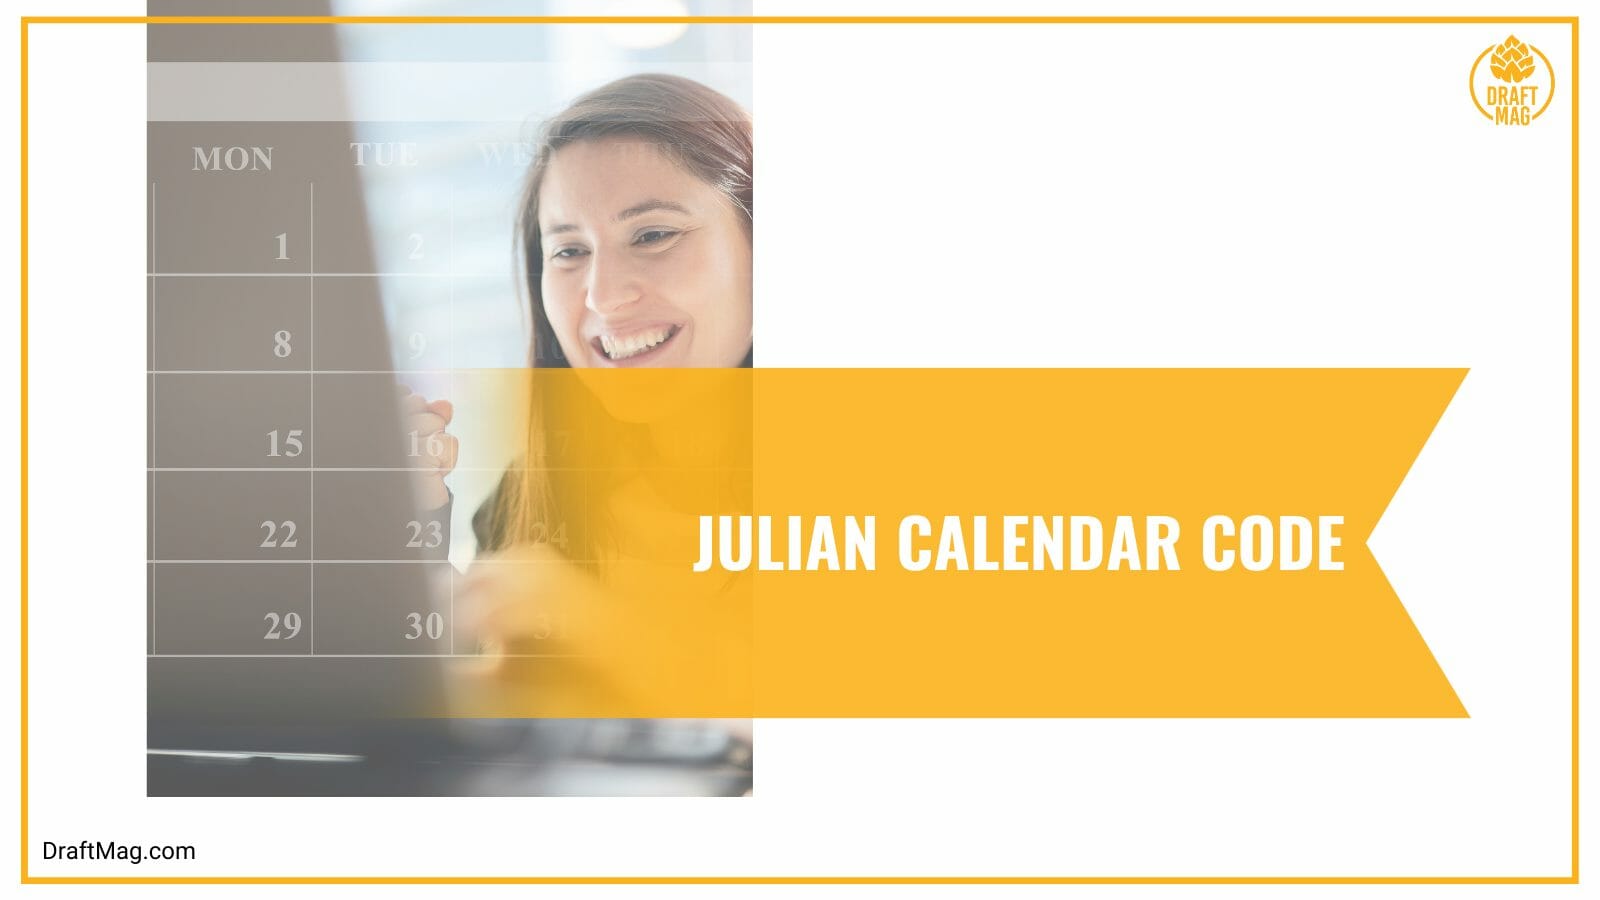 Julian calendar code